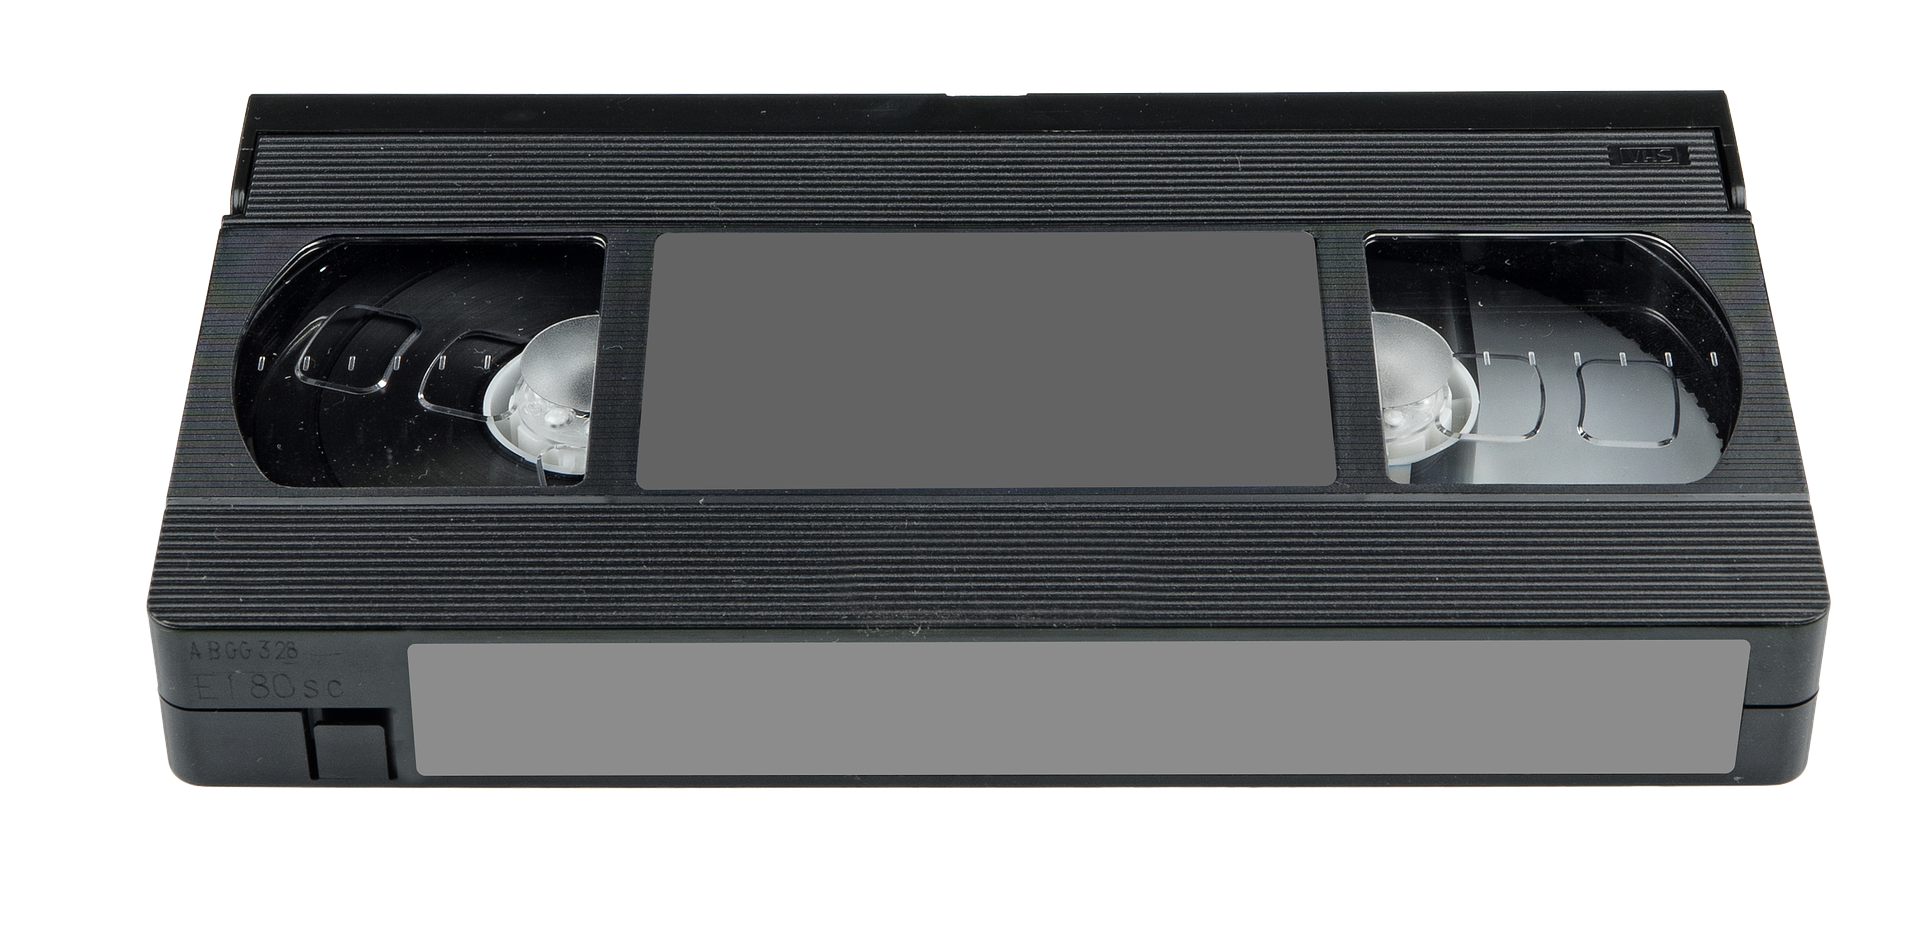 Кассеты для видеомагнитофона. ВХС кассеты. Бетамакс кассеты. Видеокассета VHS. Кассета для видеомагнитофона.